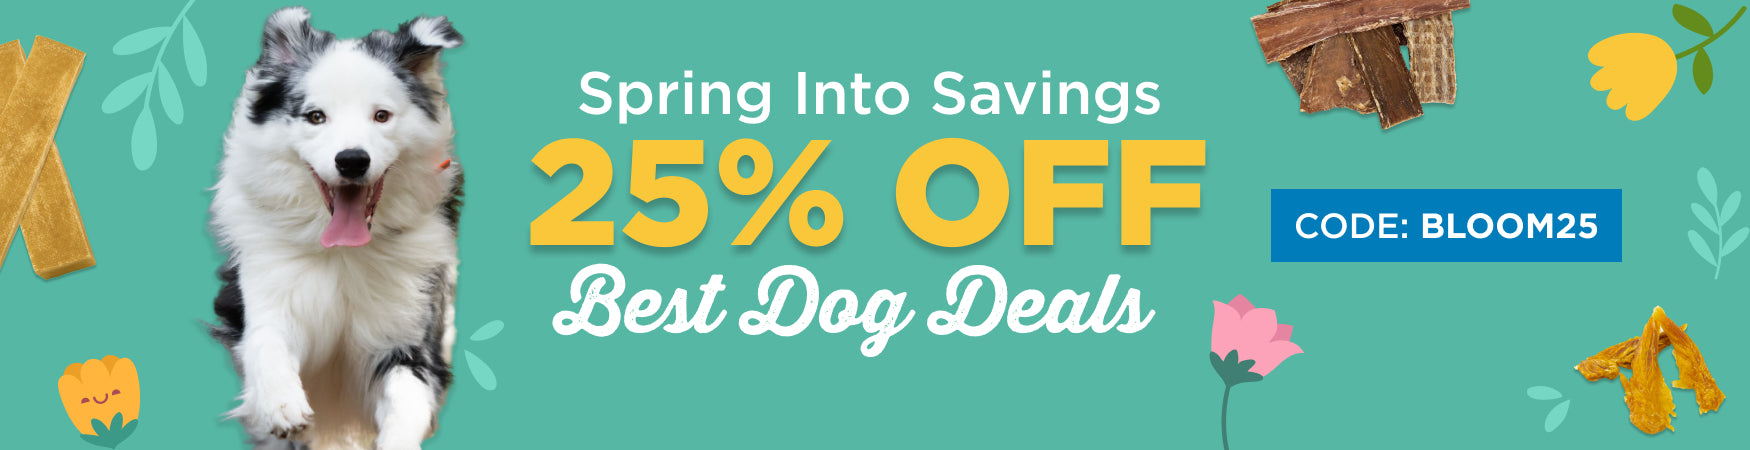 Best Dog Deals